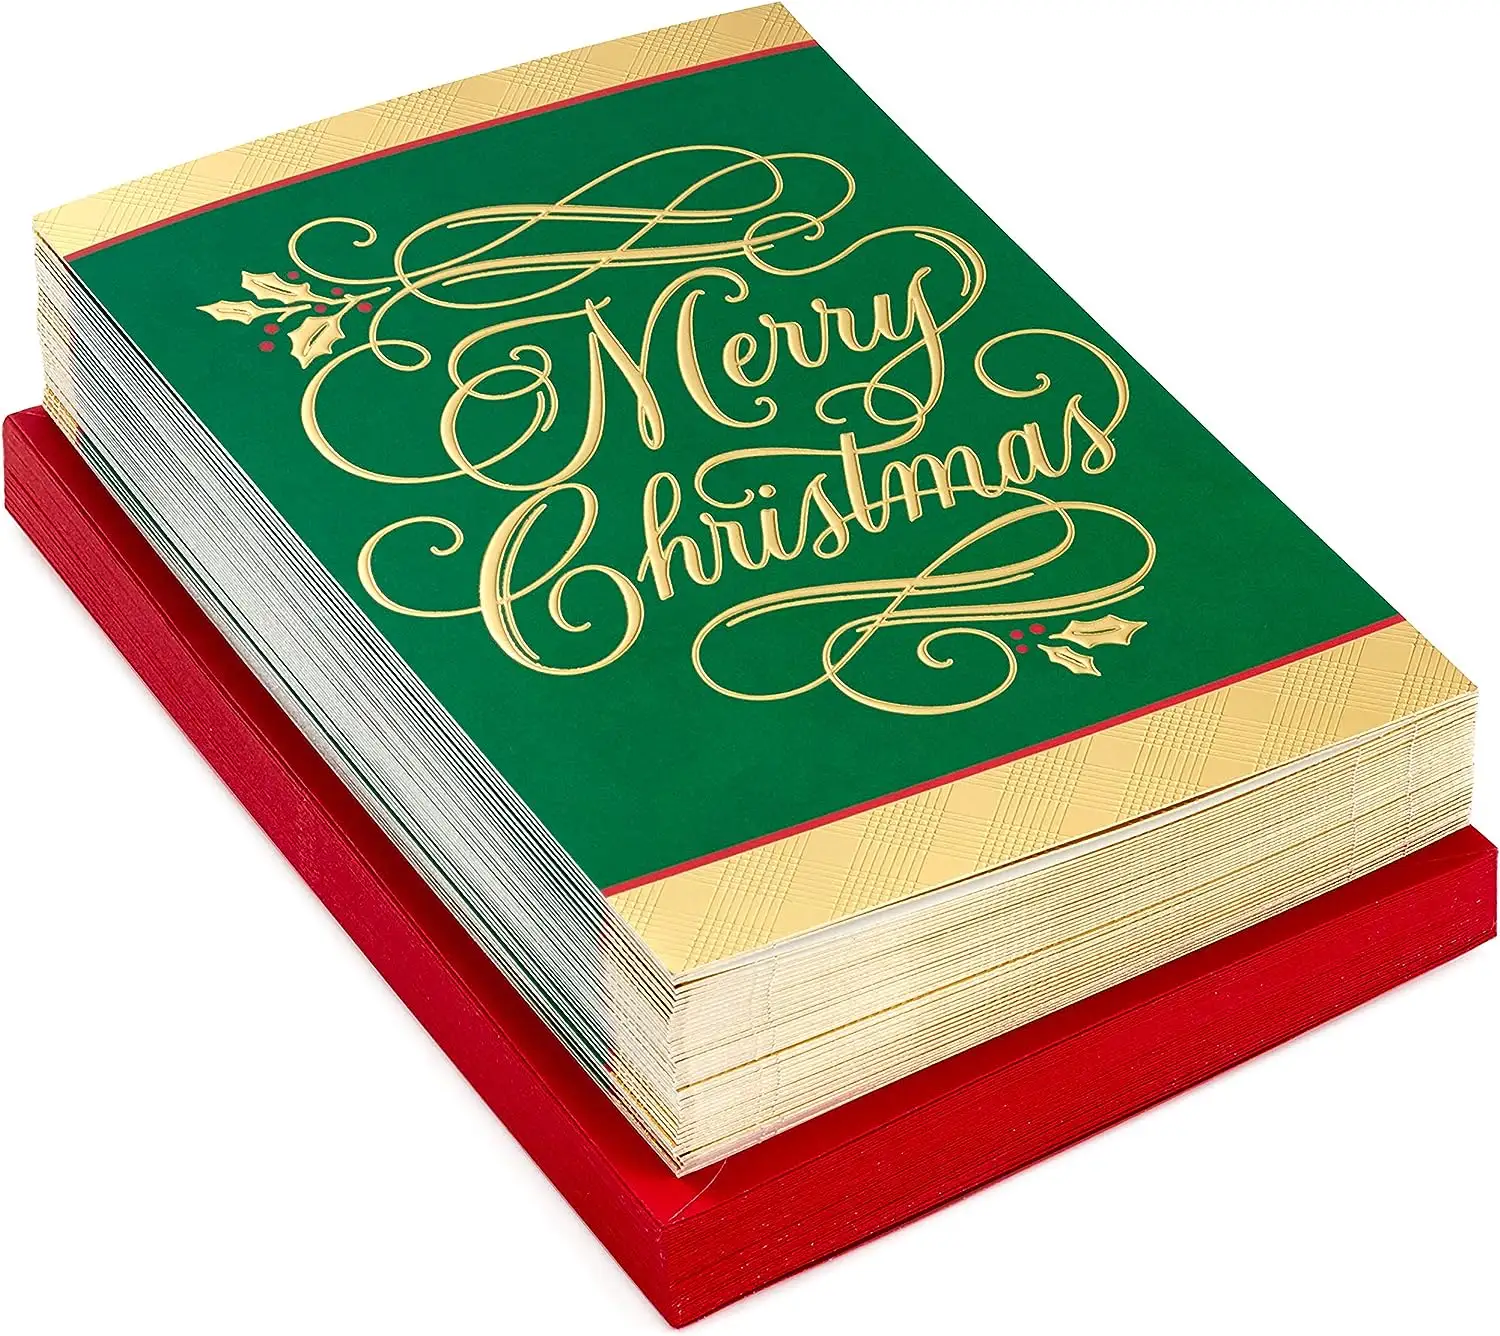 Profesyonel lüks altın folyo kağıt el yapımı tatil zarflar ile Merry Christmas tebrik kartları kutu seti